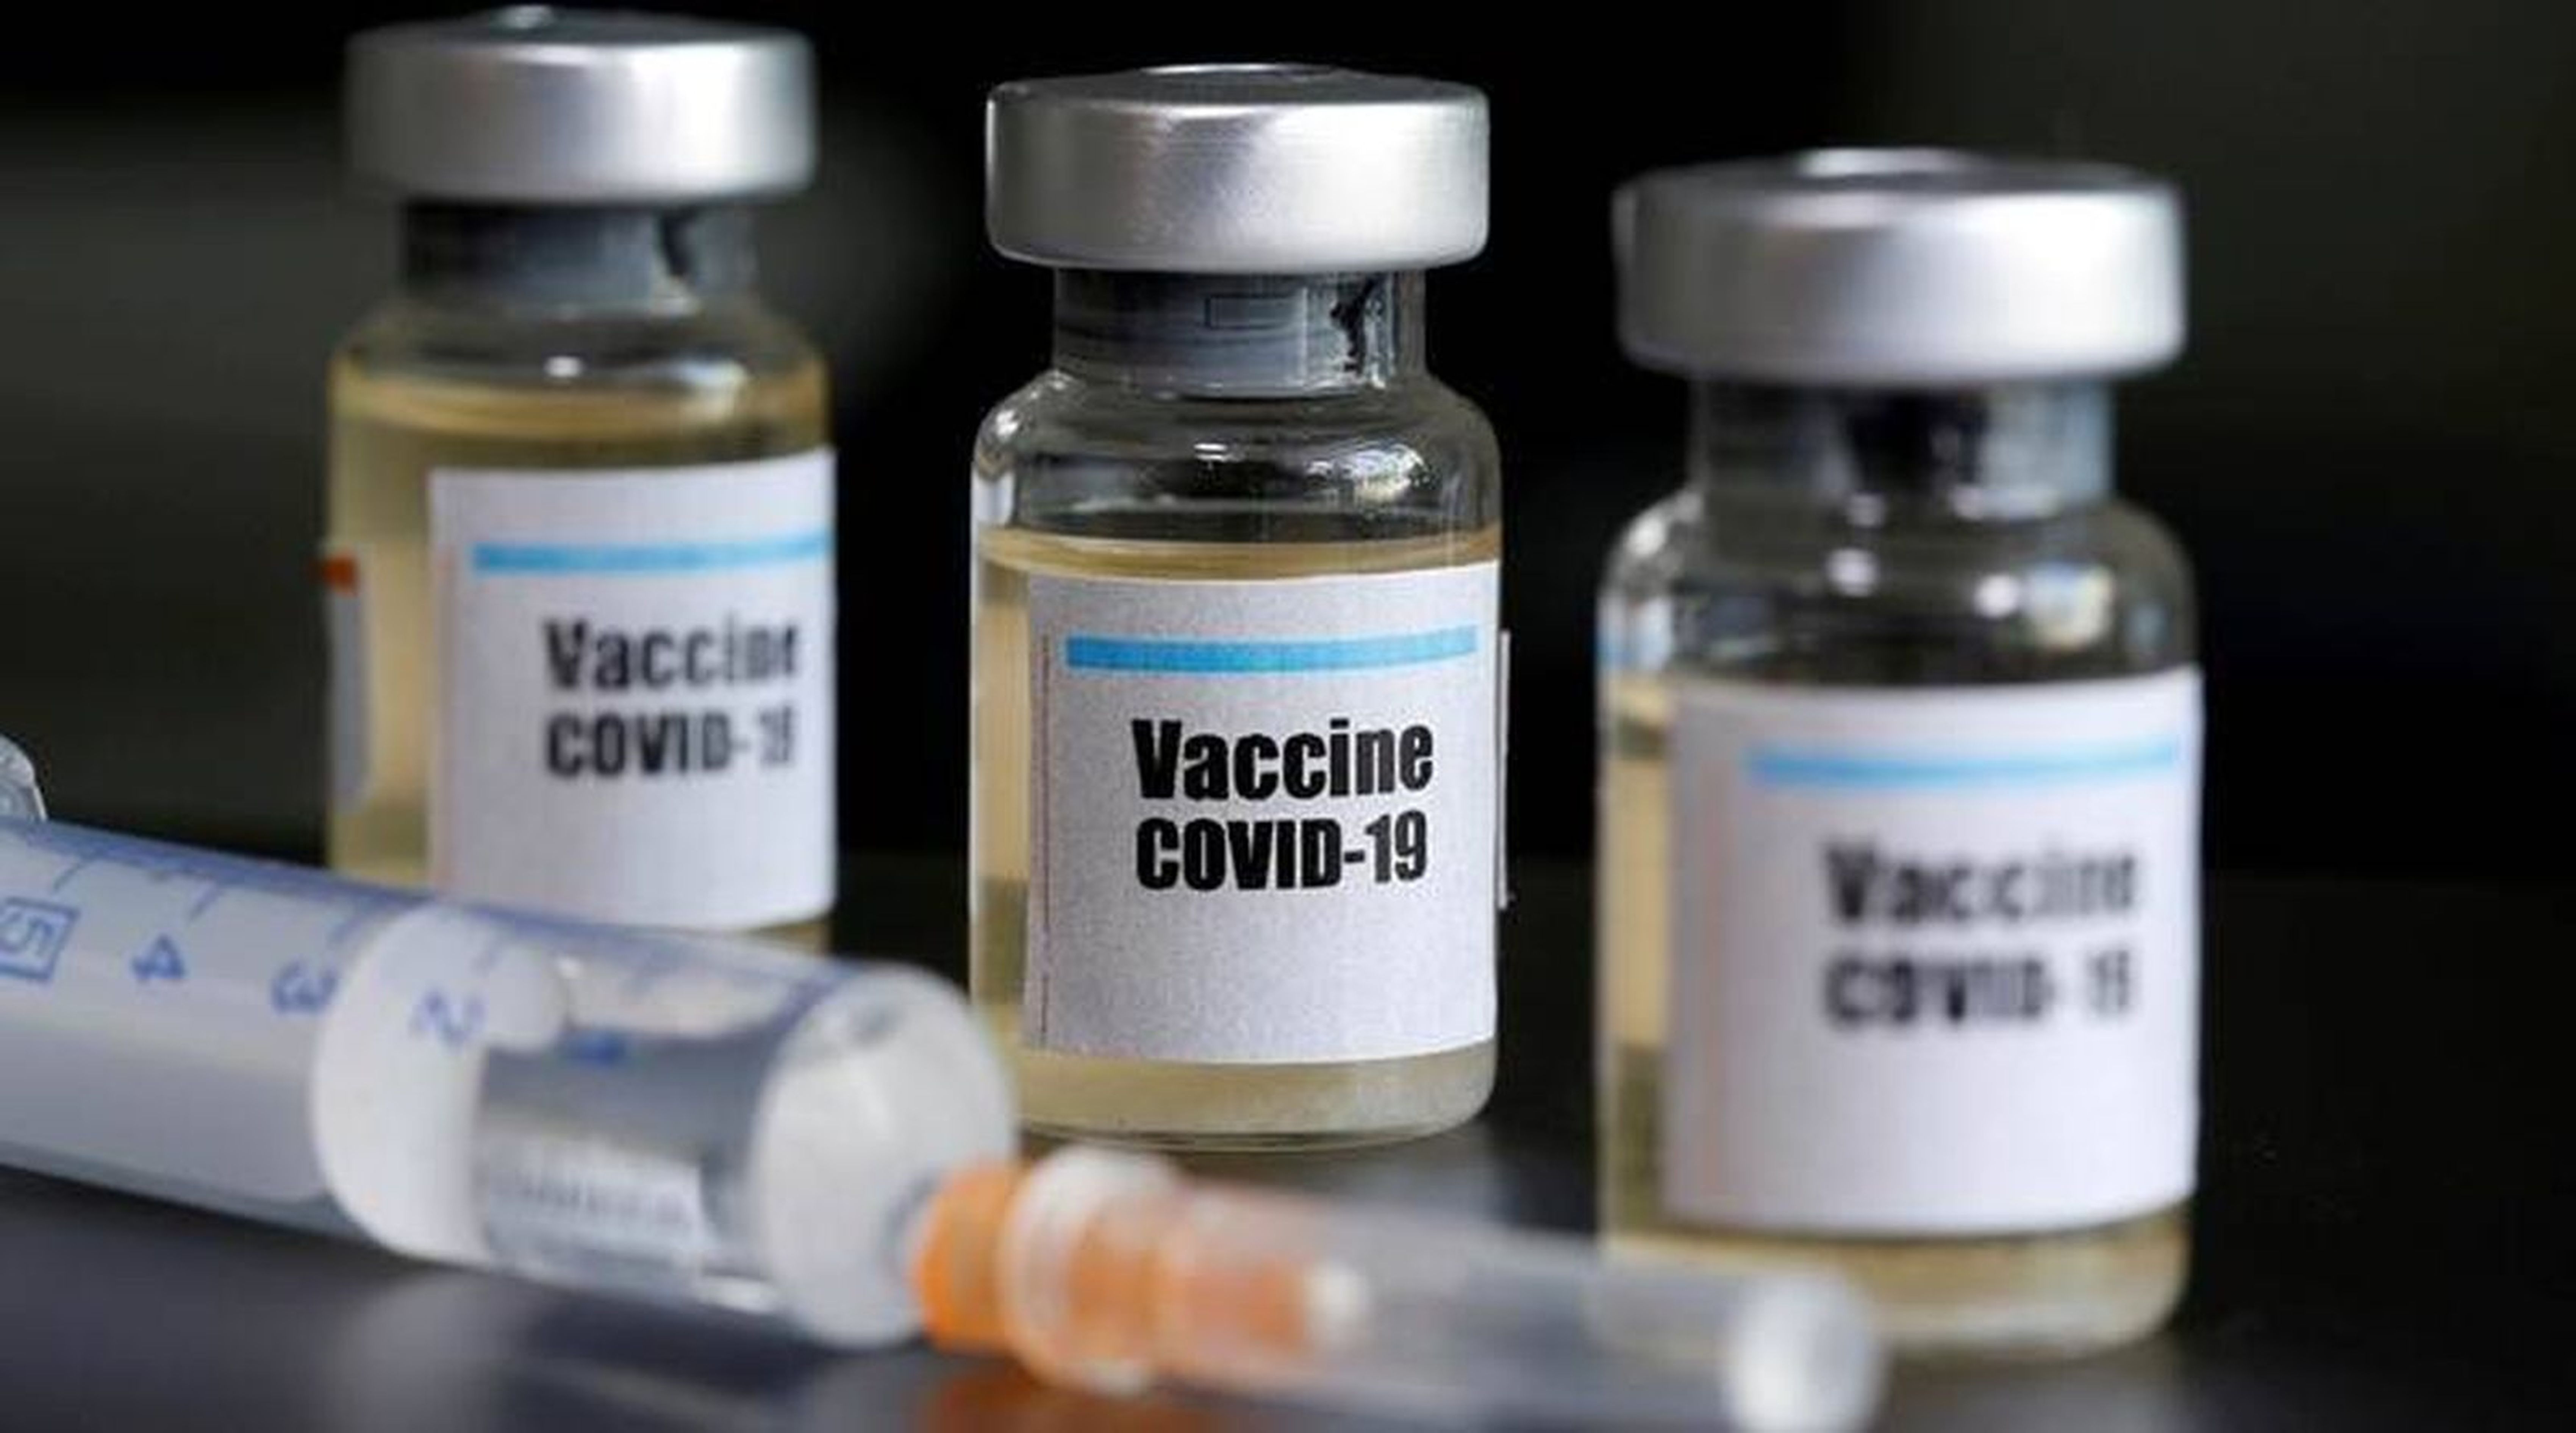 COVID-19 Vaccines booster dose: शुल्क लग रहा तो कोई नहीं आ रहा बूस्टर डोज लगाने